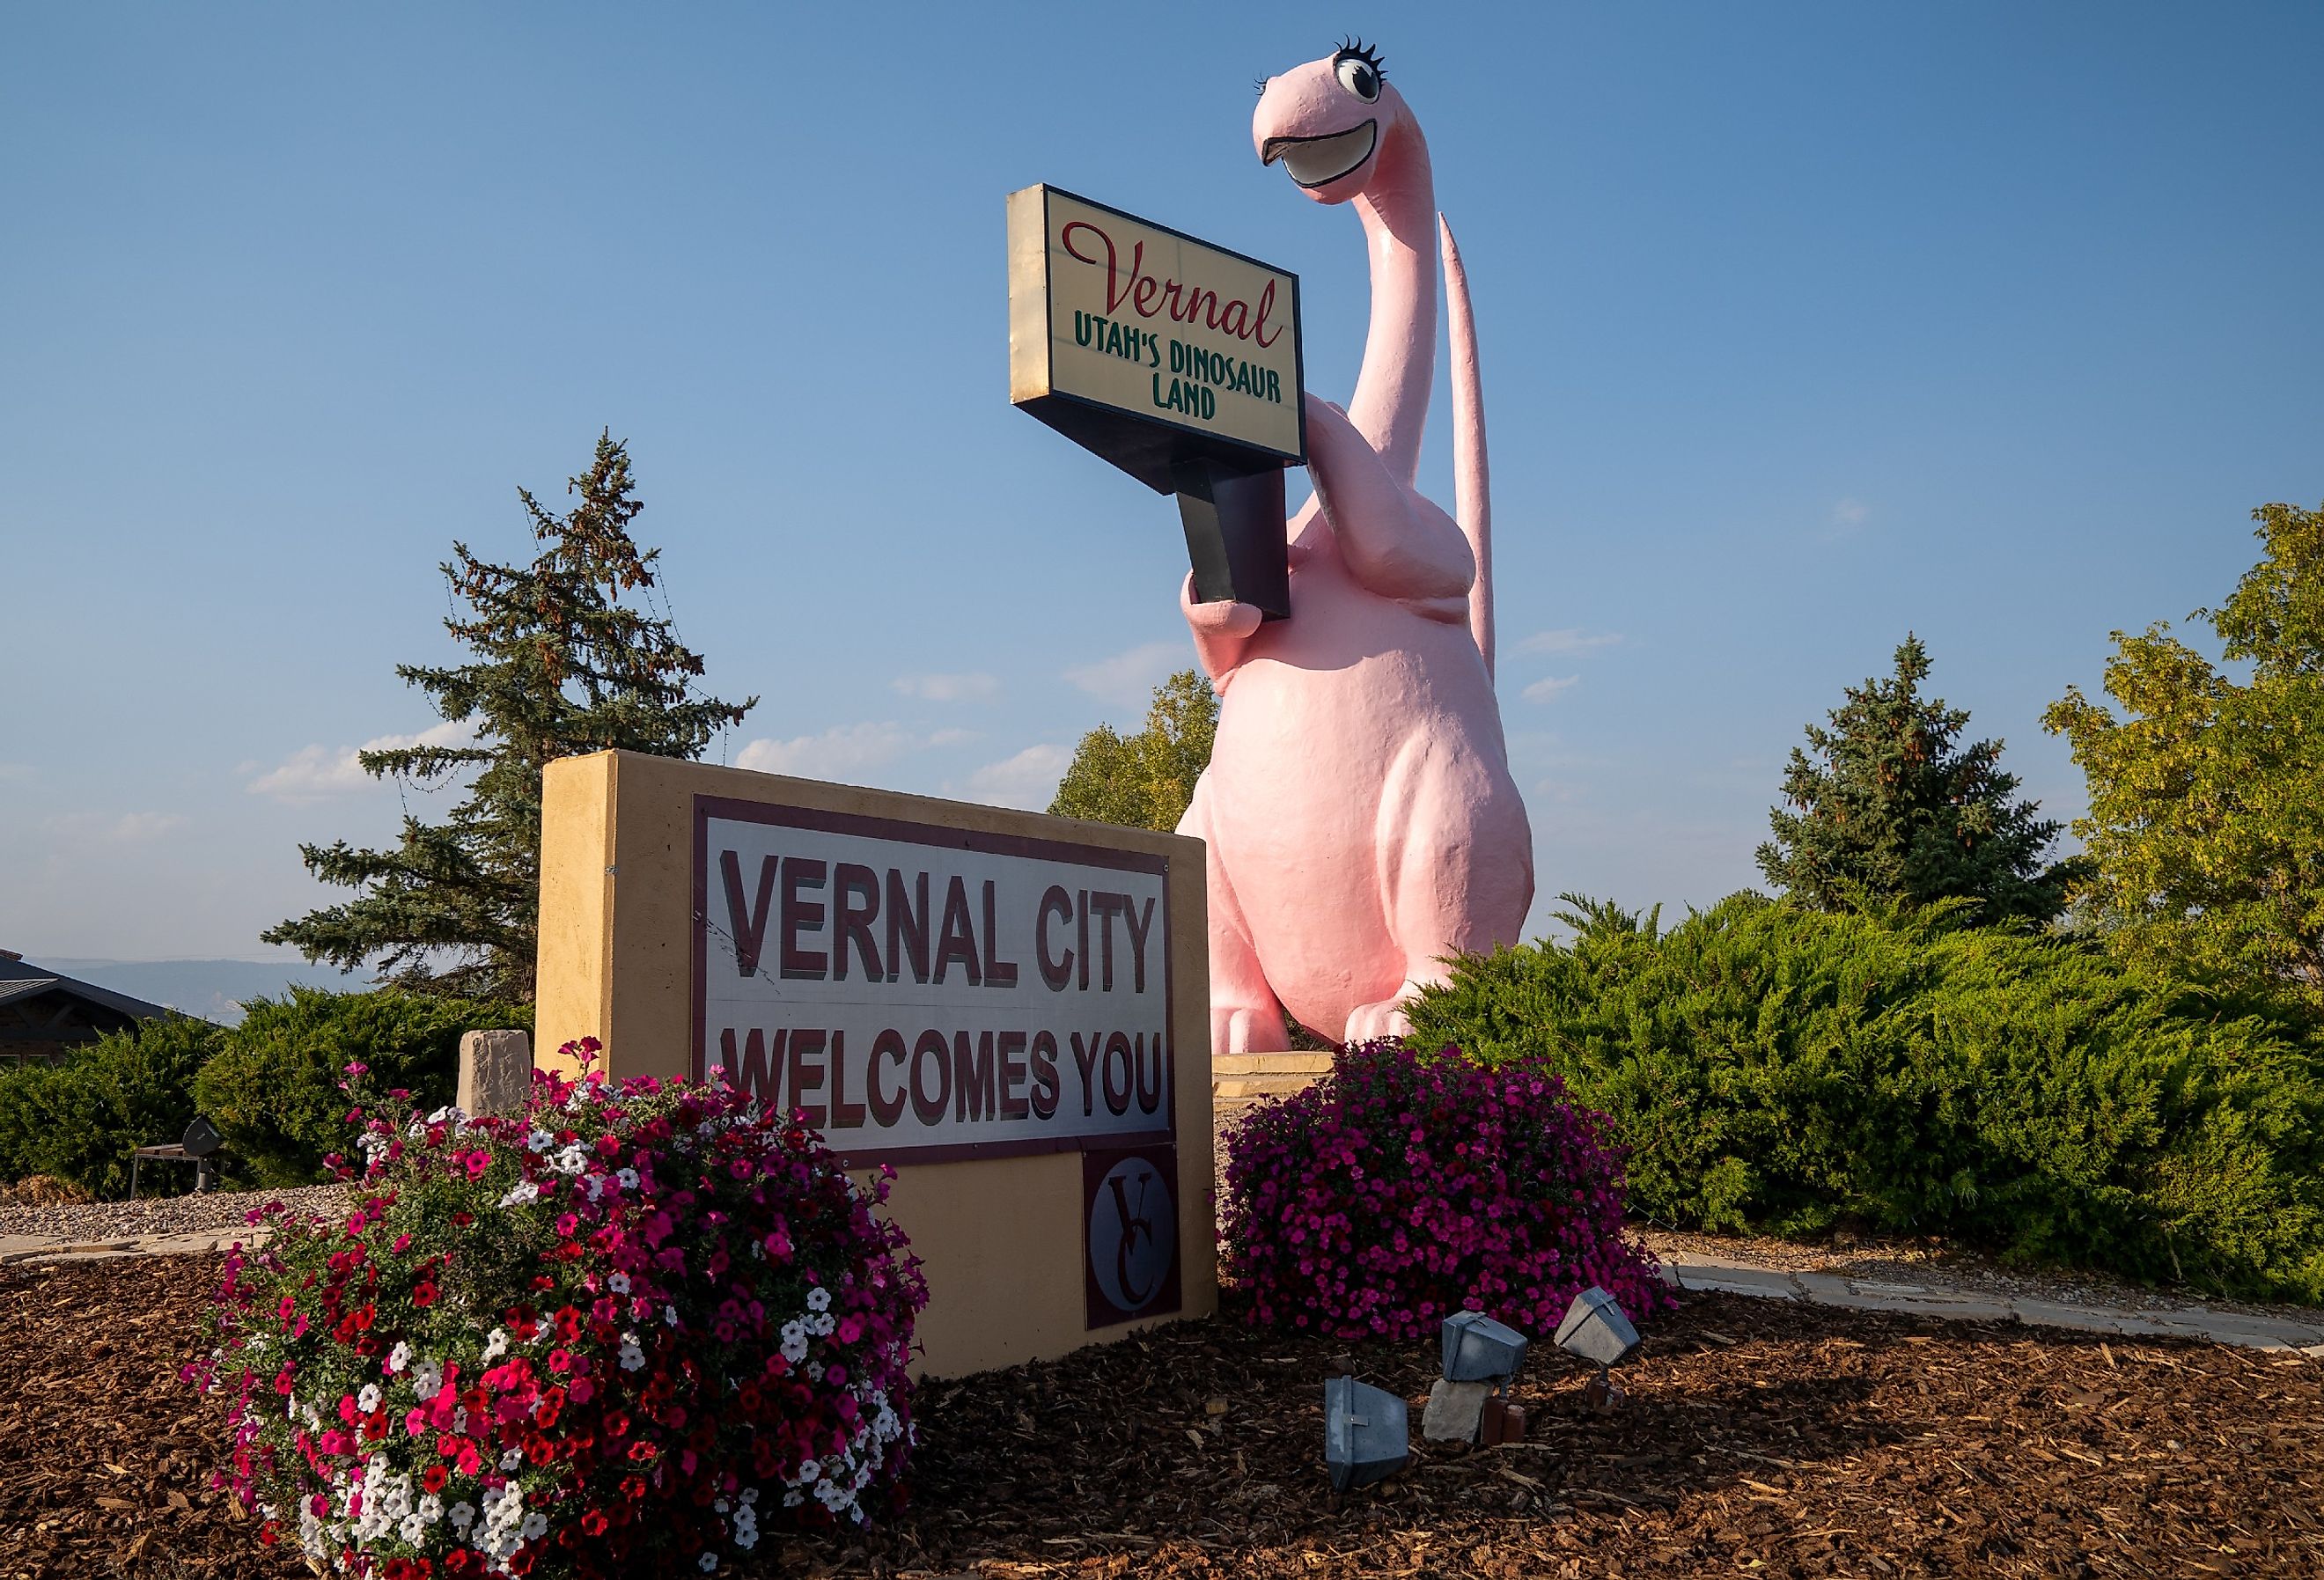 Welcome sign with pink dinosaur for Vernal, Utah. Image credit melissamn via Shutterstock